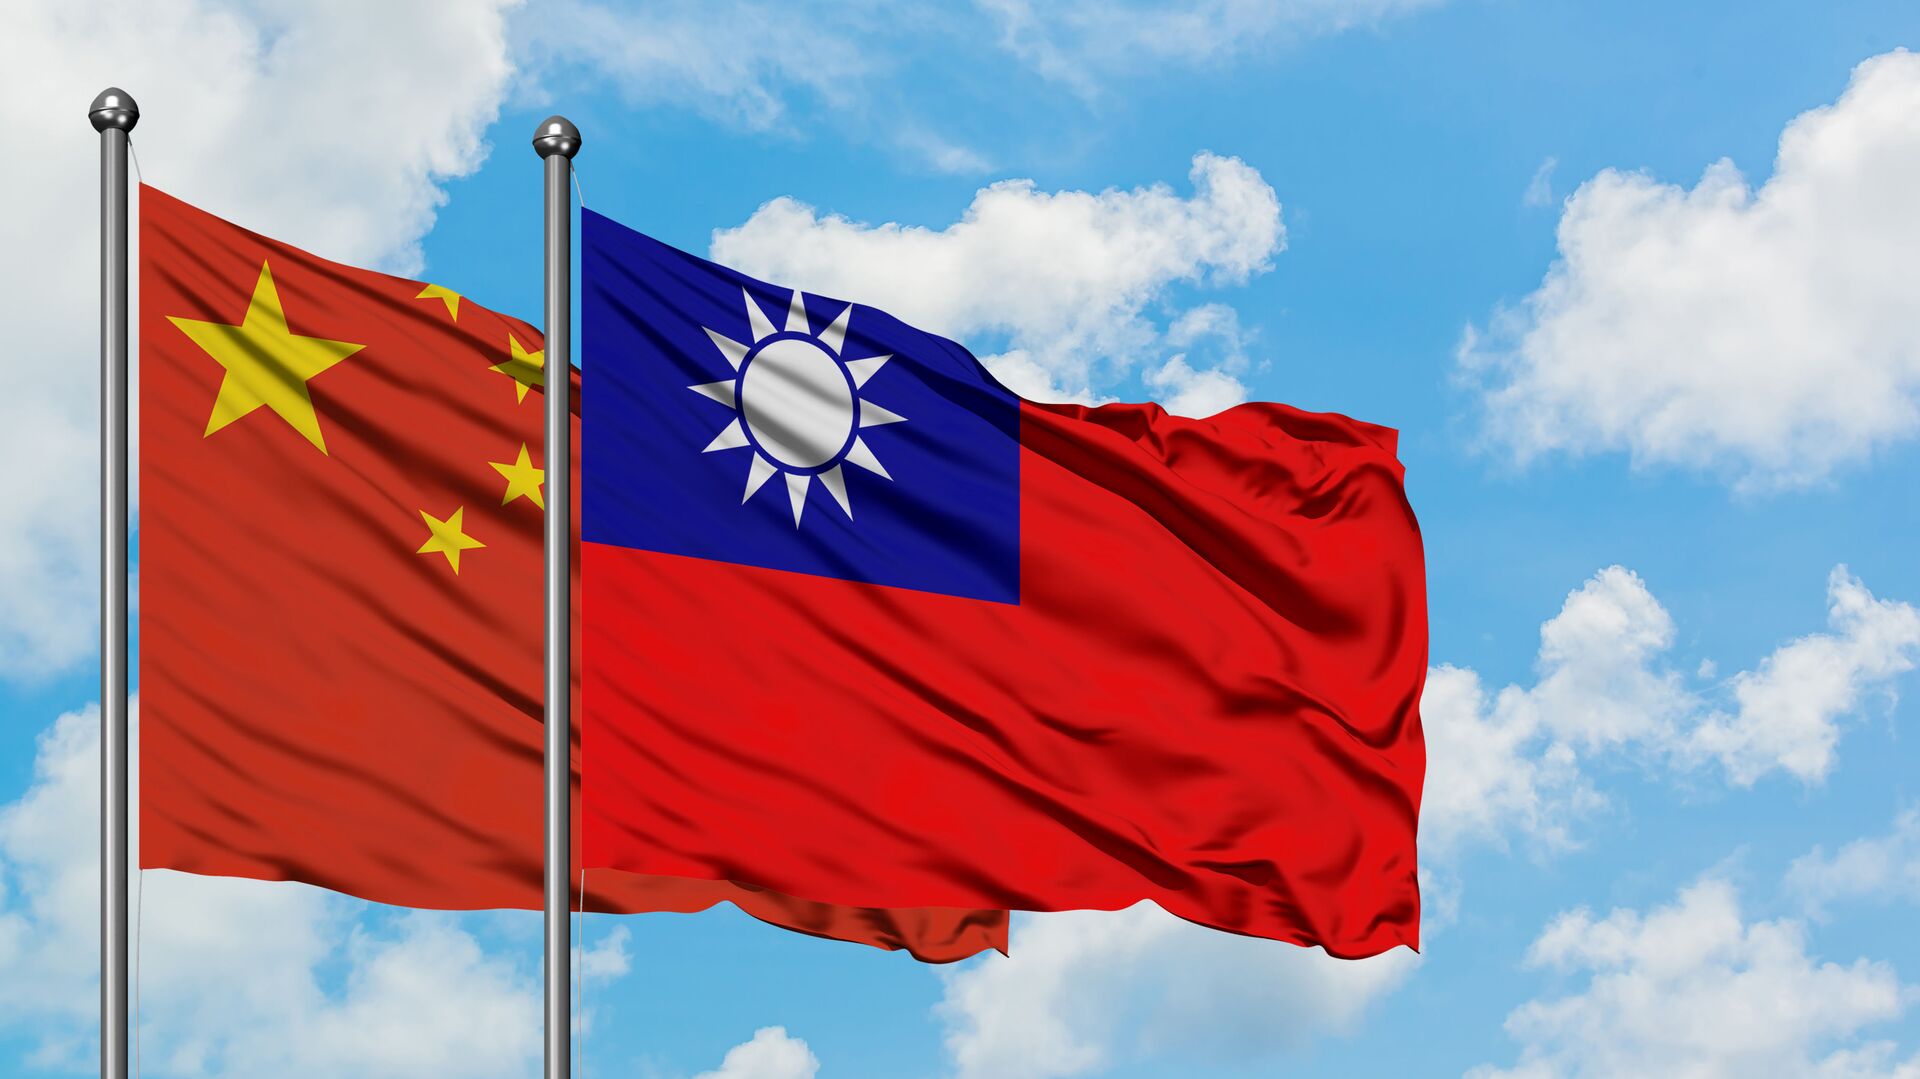 Nhà Đông phương học nói về khả năng Trung Quốc tấn công Đài Loan - 19.03.2022, Sputnik Việt Nam